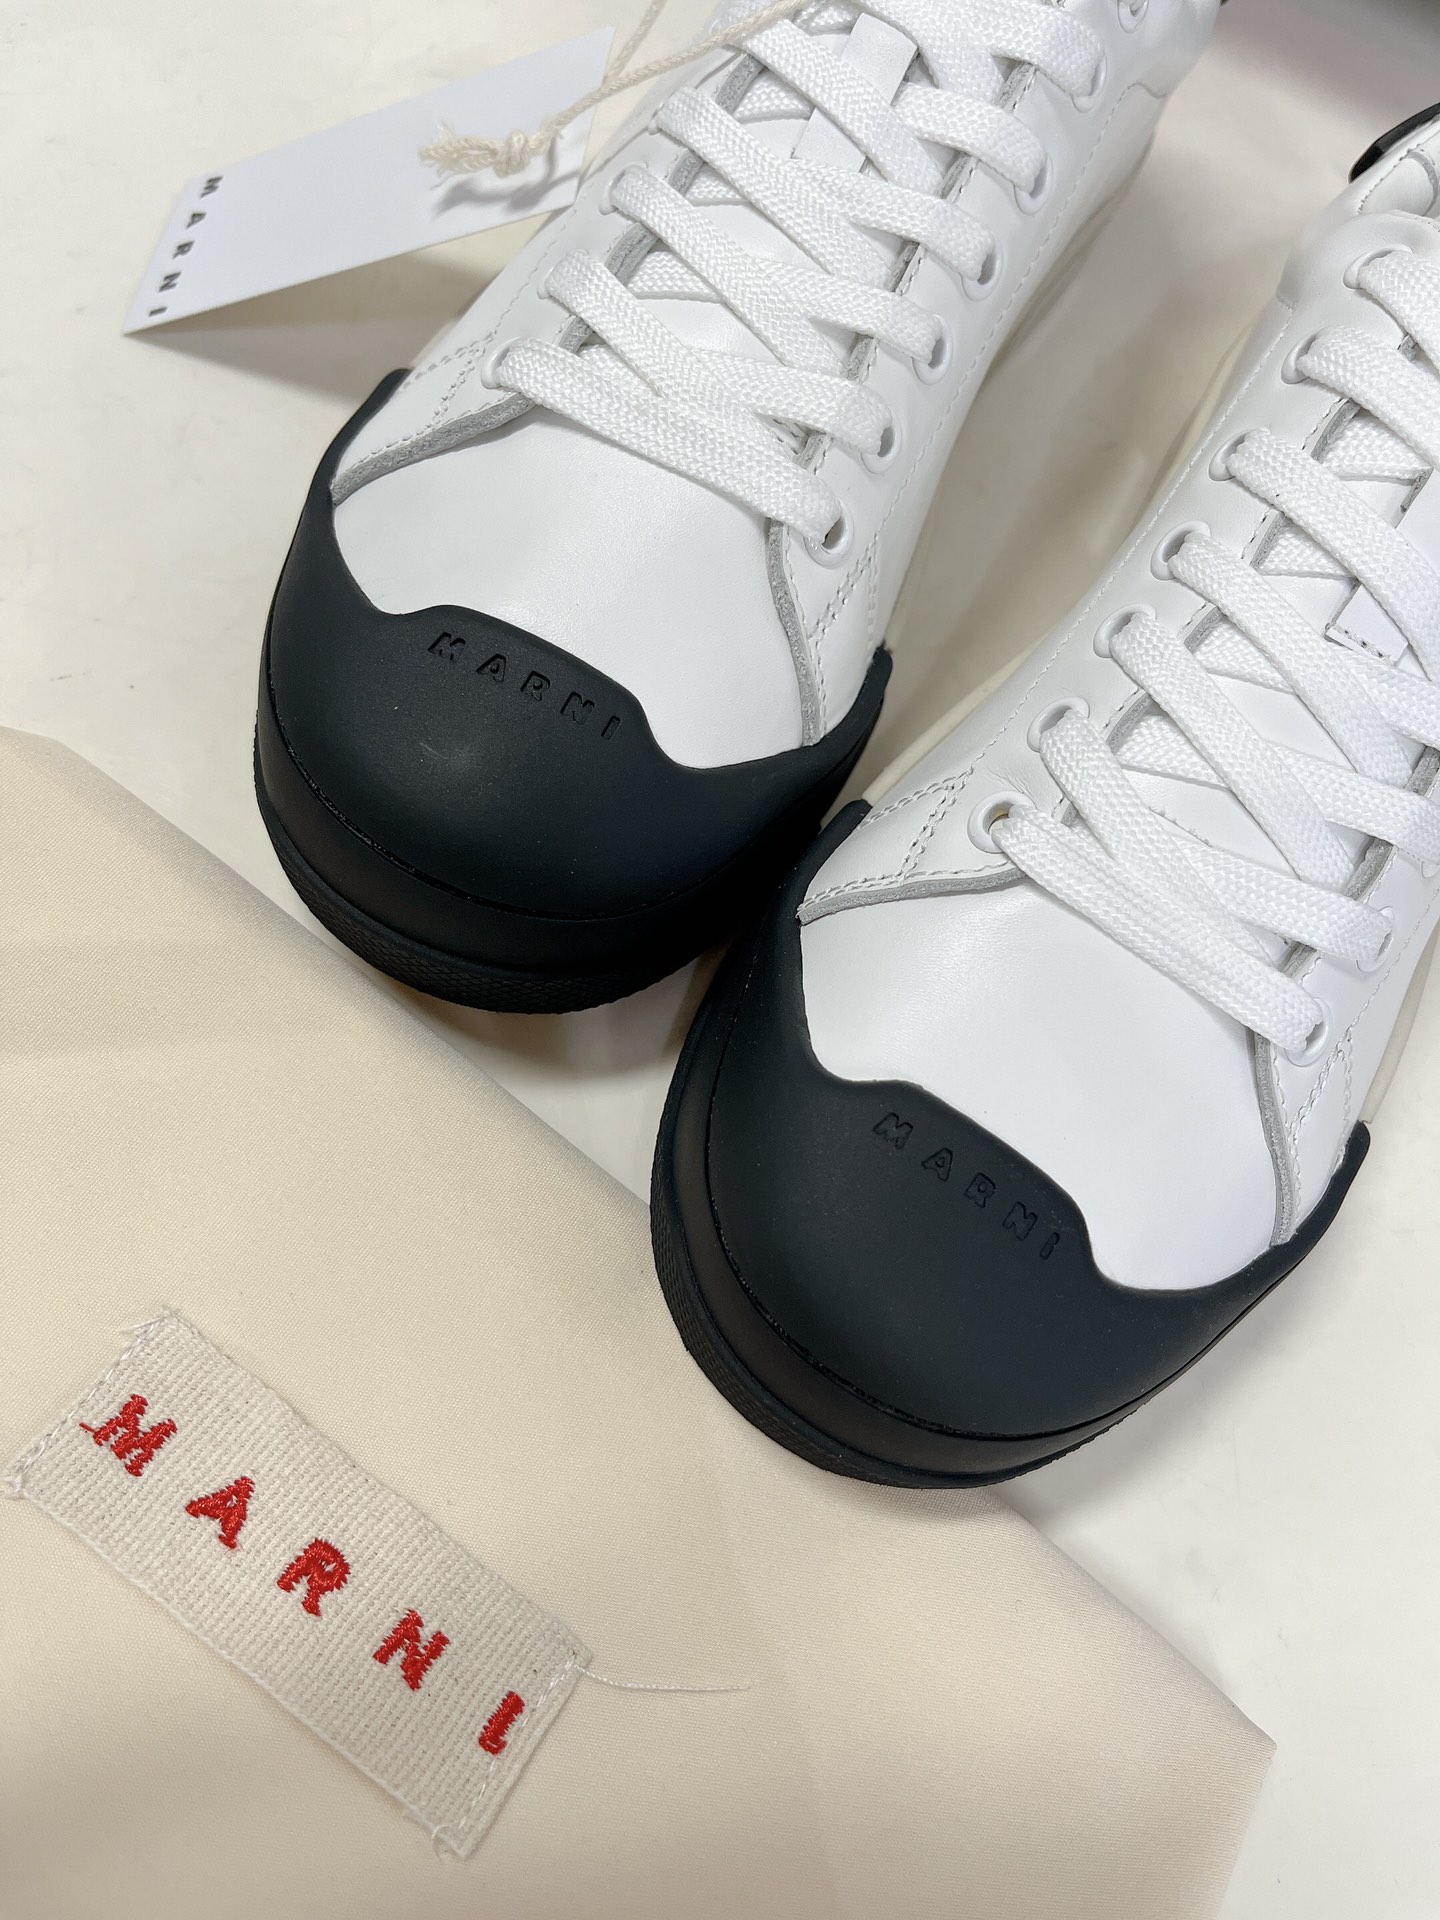 MARNI玛尼DADABUMPER系列休闲运动鞋贝壳头饼干鞋小白鞋在鞋子的前后都搭载了橡胶保护层一方面增